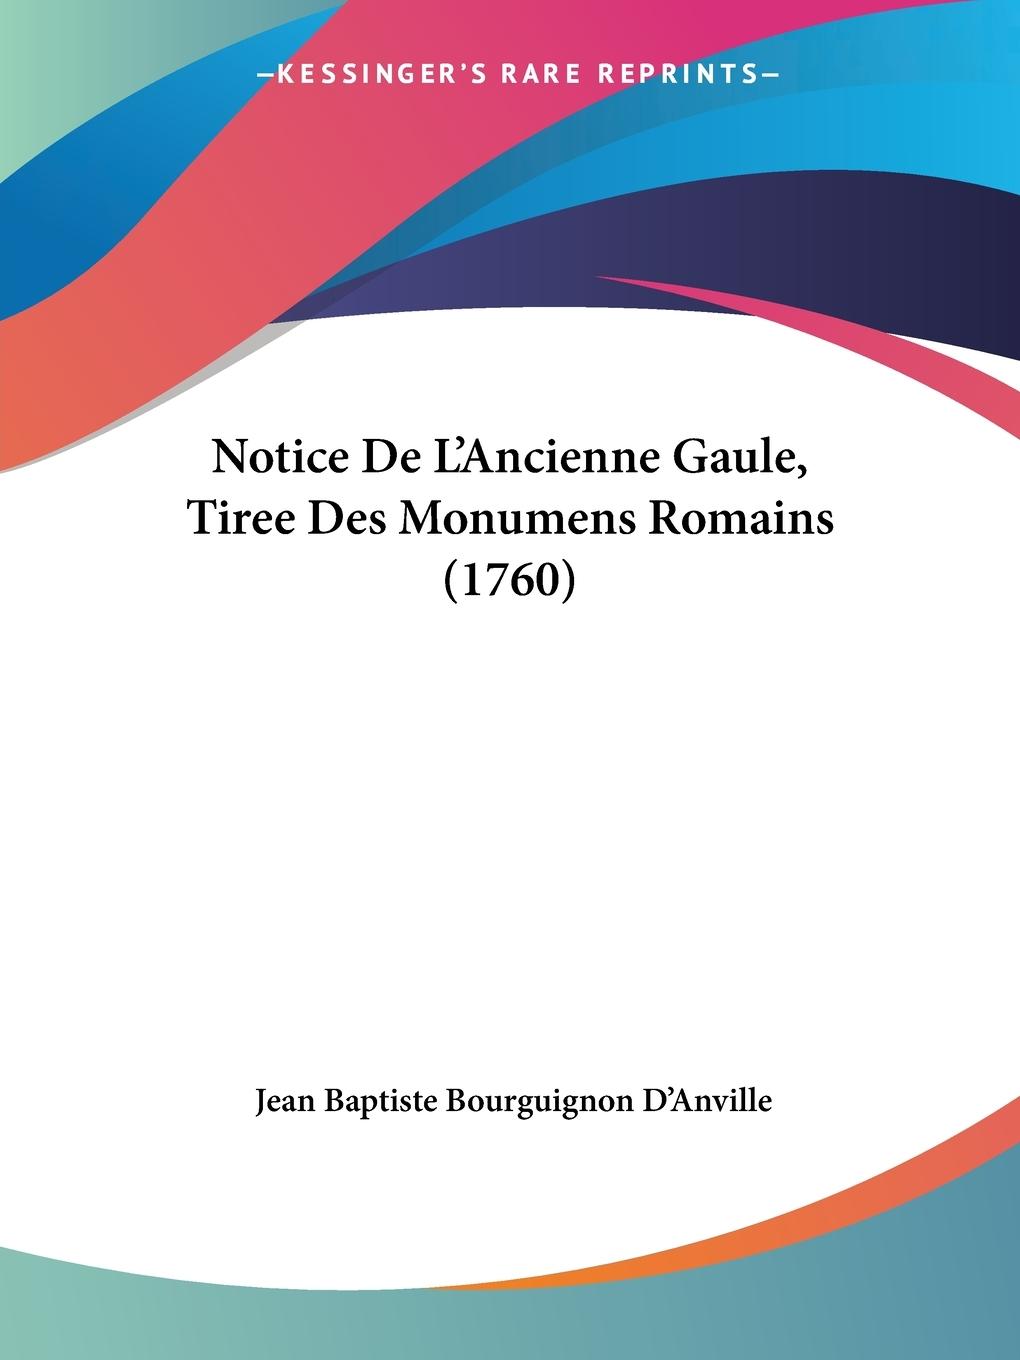 Notice De L Ancienne Gaule, Tiree Des Monumens Romains (1760) - D Anville, Jean Baptiste Bourguignon